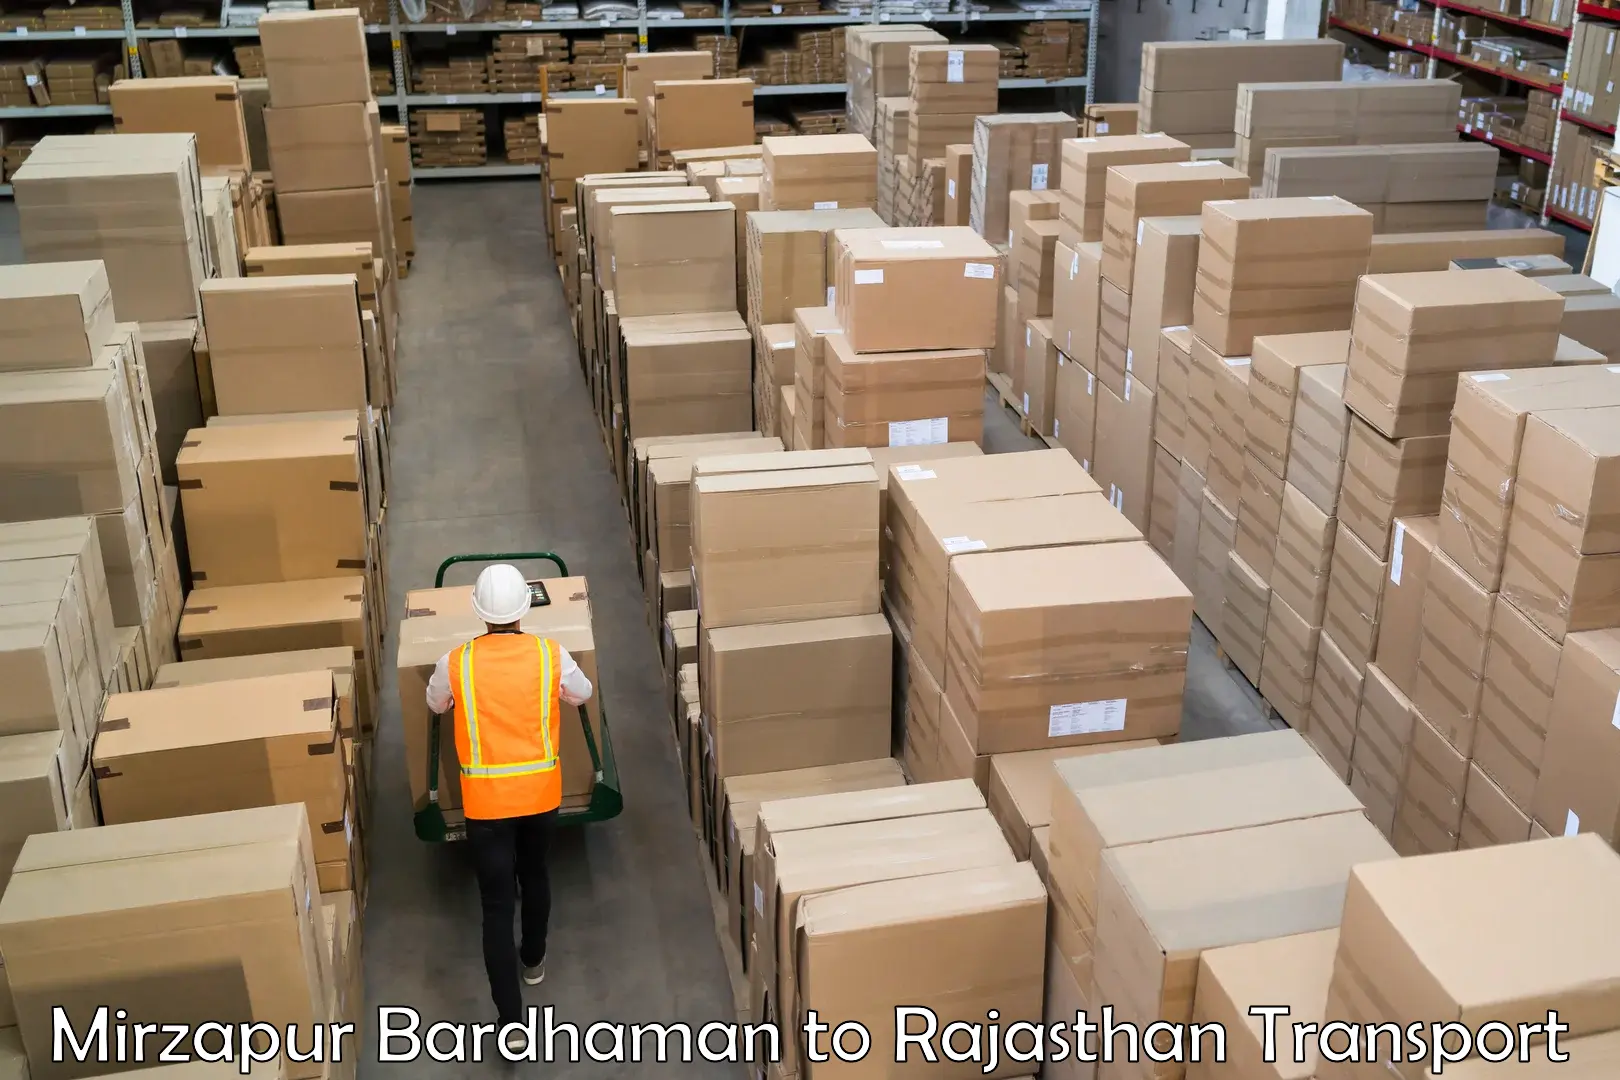 Shipping partner Mirzapur Bardhaman to Bissau